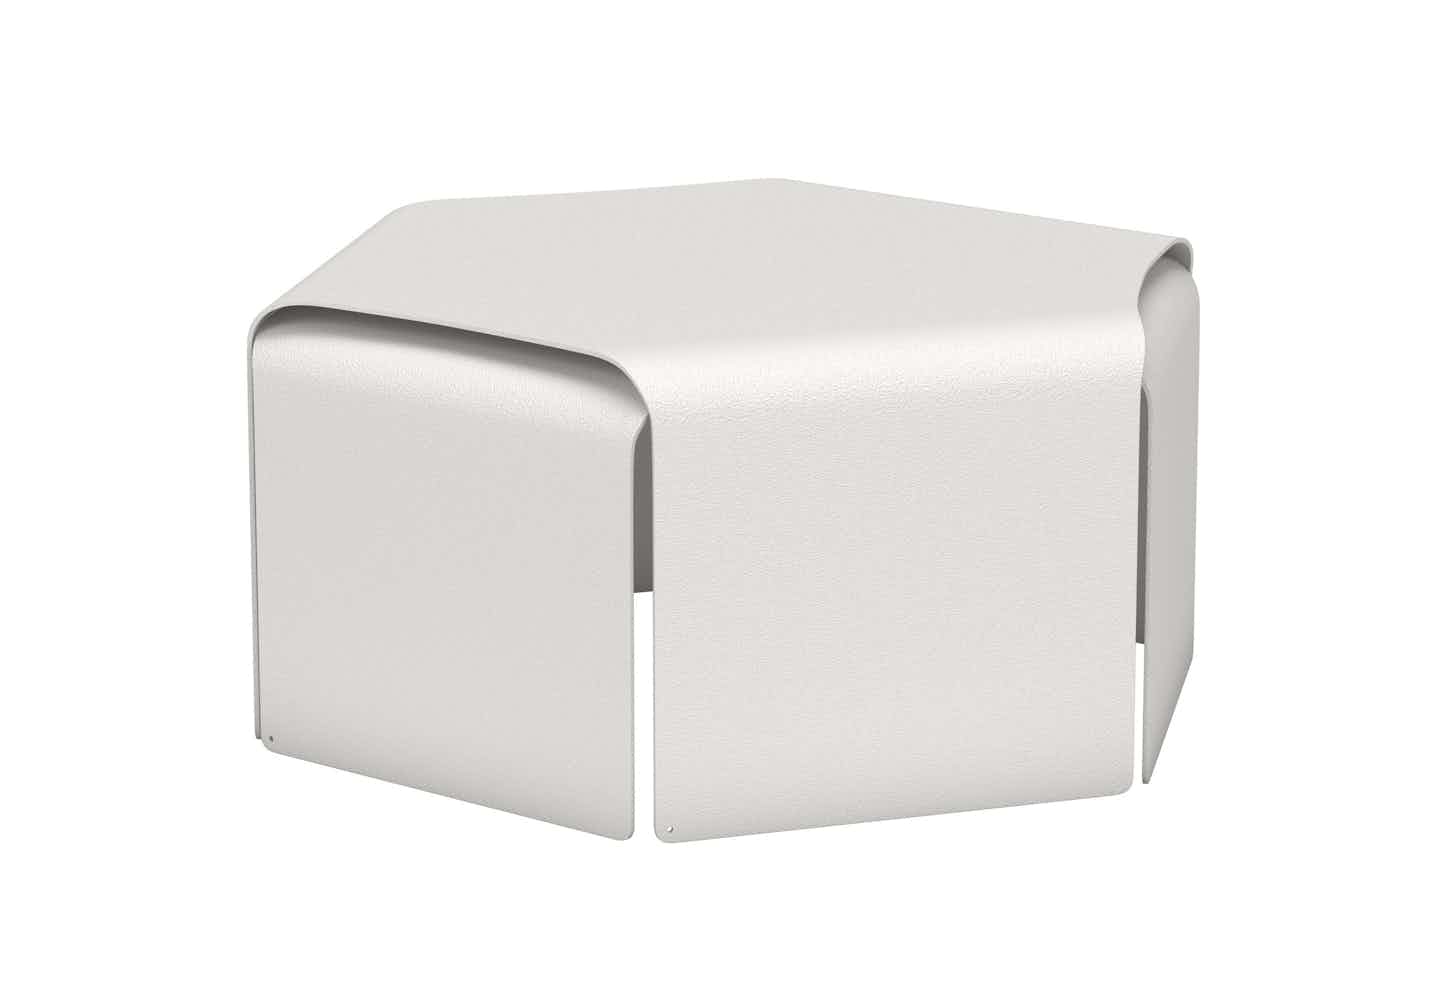 Matiere grise quaglio simonelli ponant table basse empilable 77x68xh35 metal 001 blanc 001 blanc copy